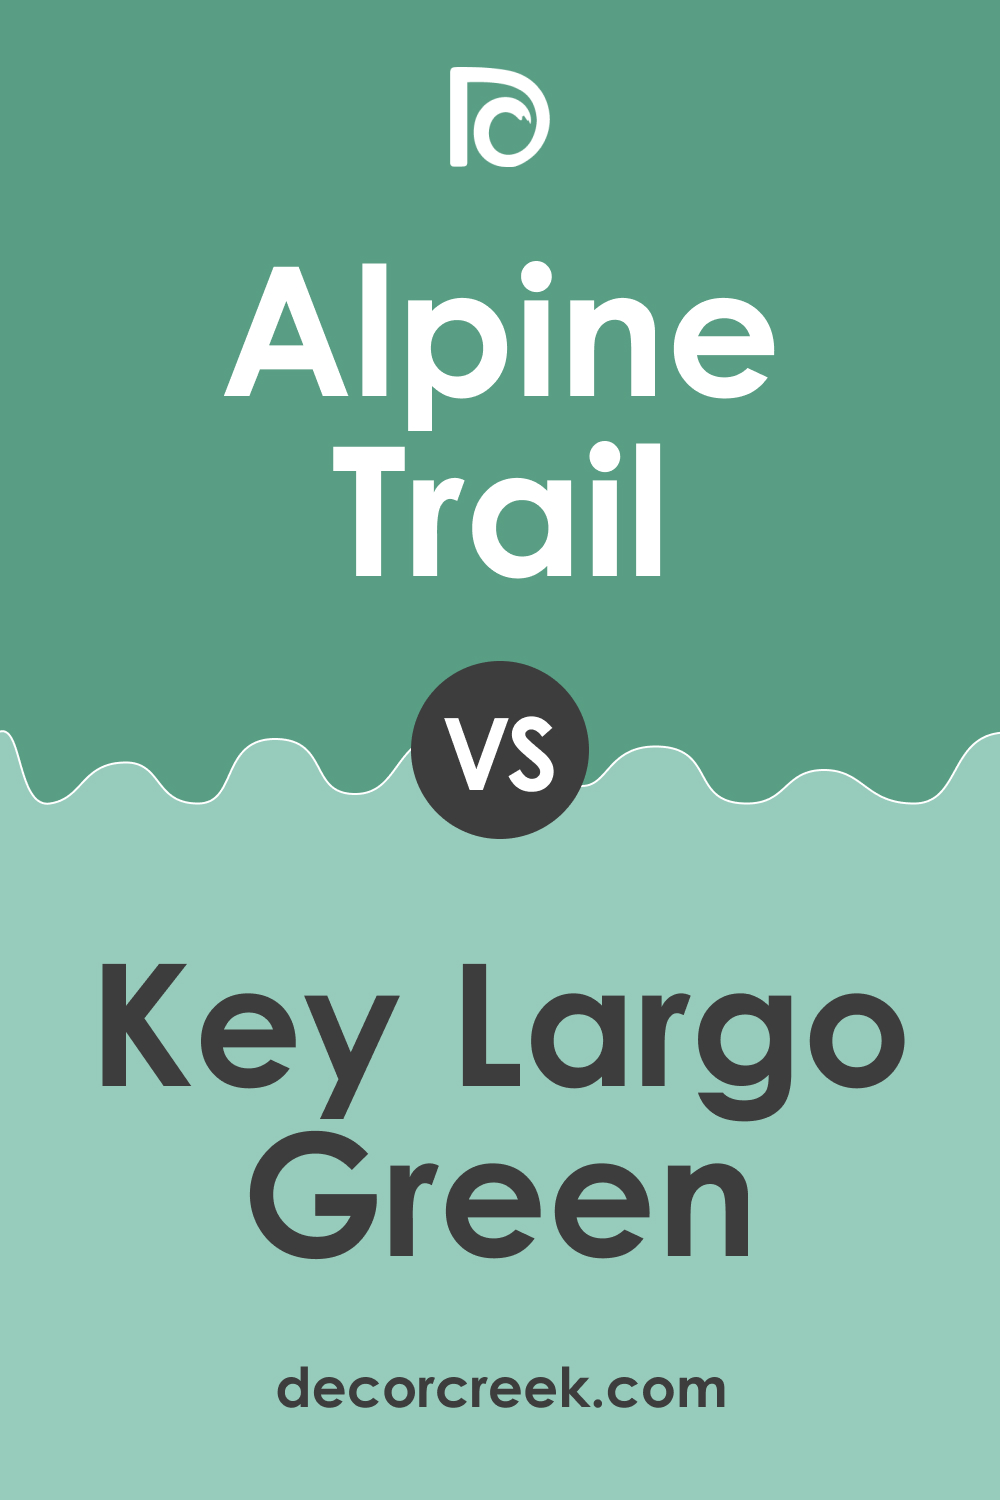 Alpine Trail 622 vs. BM 620 Key Largo Green